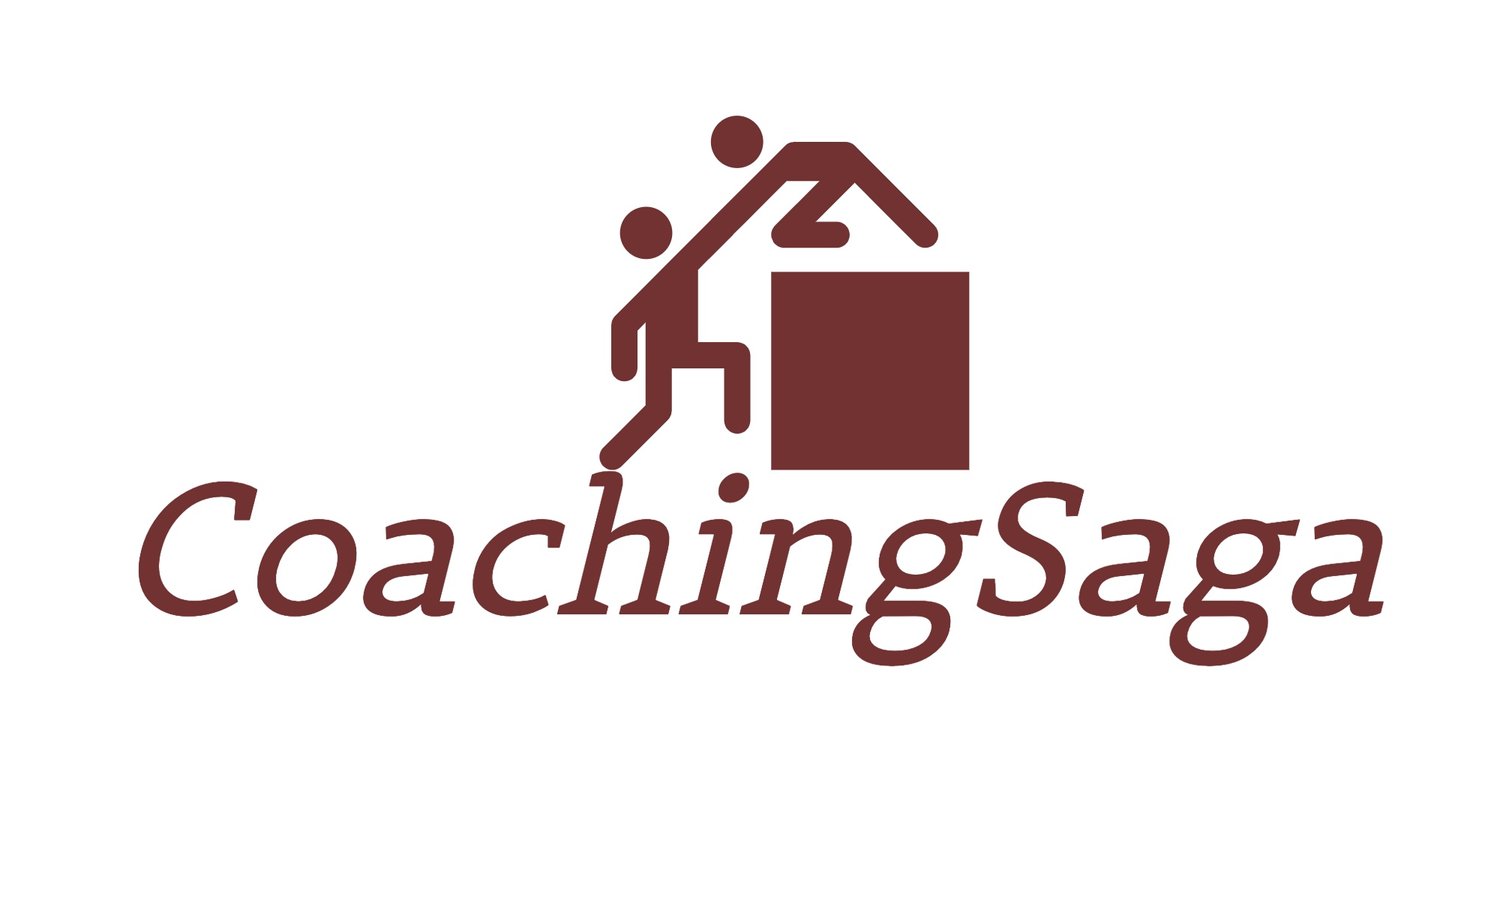 CoachingSaga